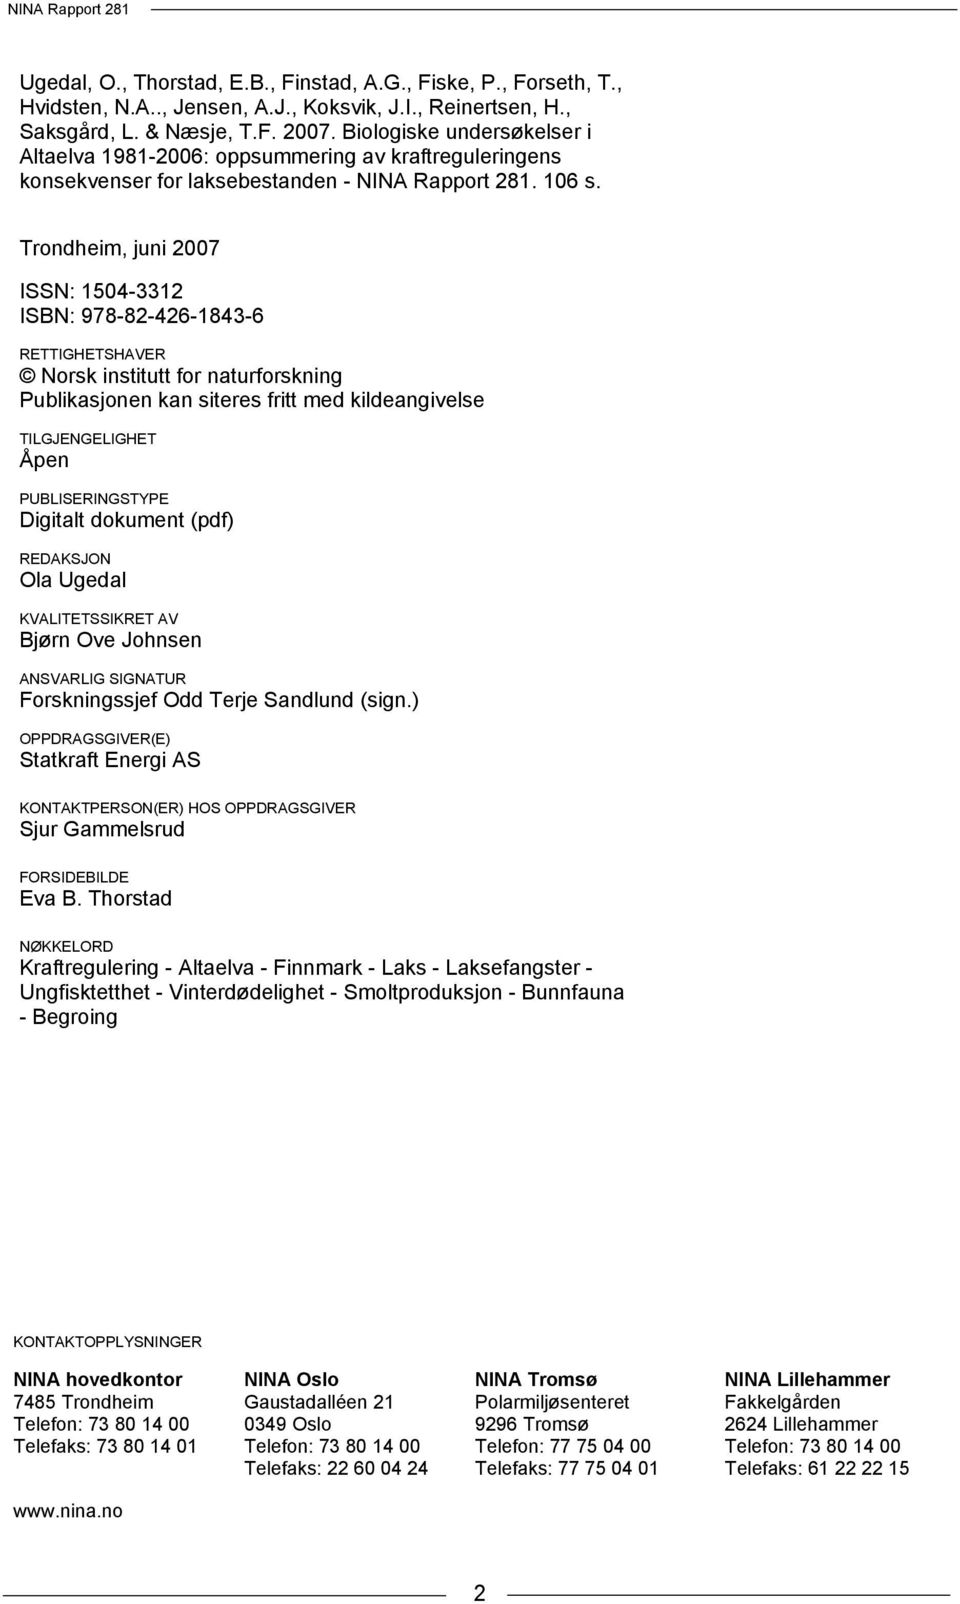 Trondheim, juni 27 ISSN: 154-3312 ISBN: 978-82-426-1843-6 RETTIGHETSHAVER Norsk institutt for naturforskning Publikasjonen kan siteres fritt med kildeangivelse TILGJENGELIGHET Åpen PUBLISERINGSTYPE